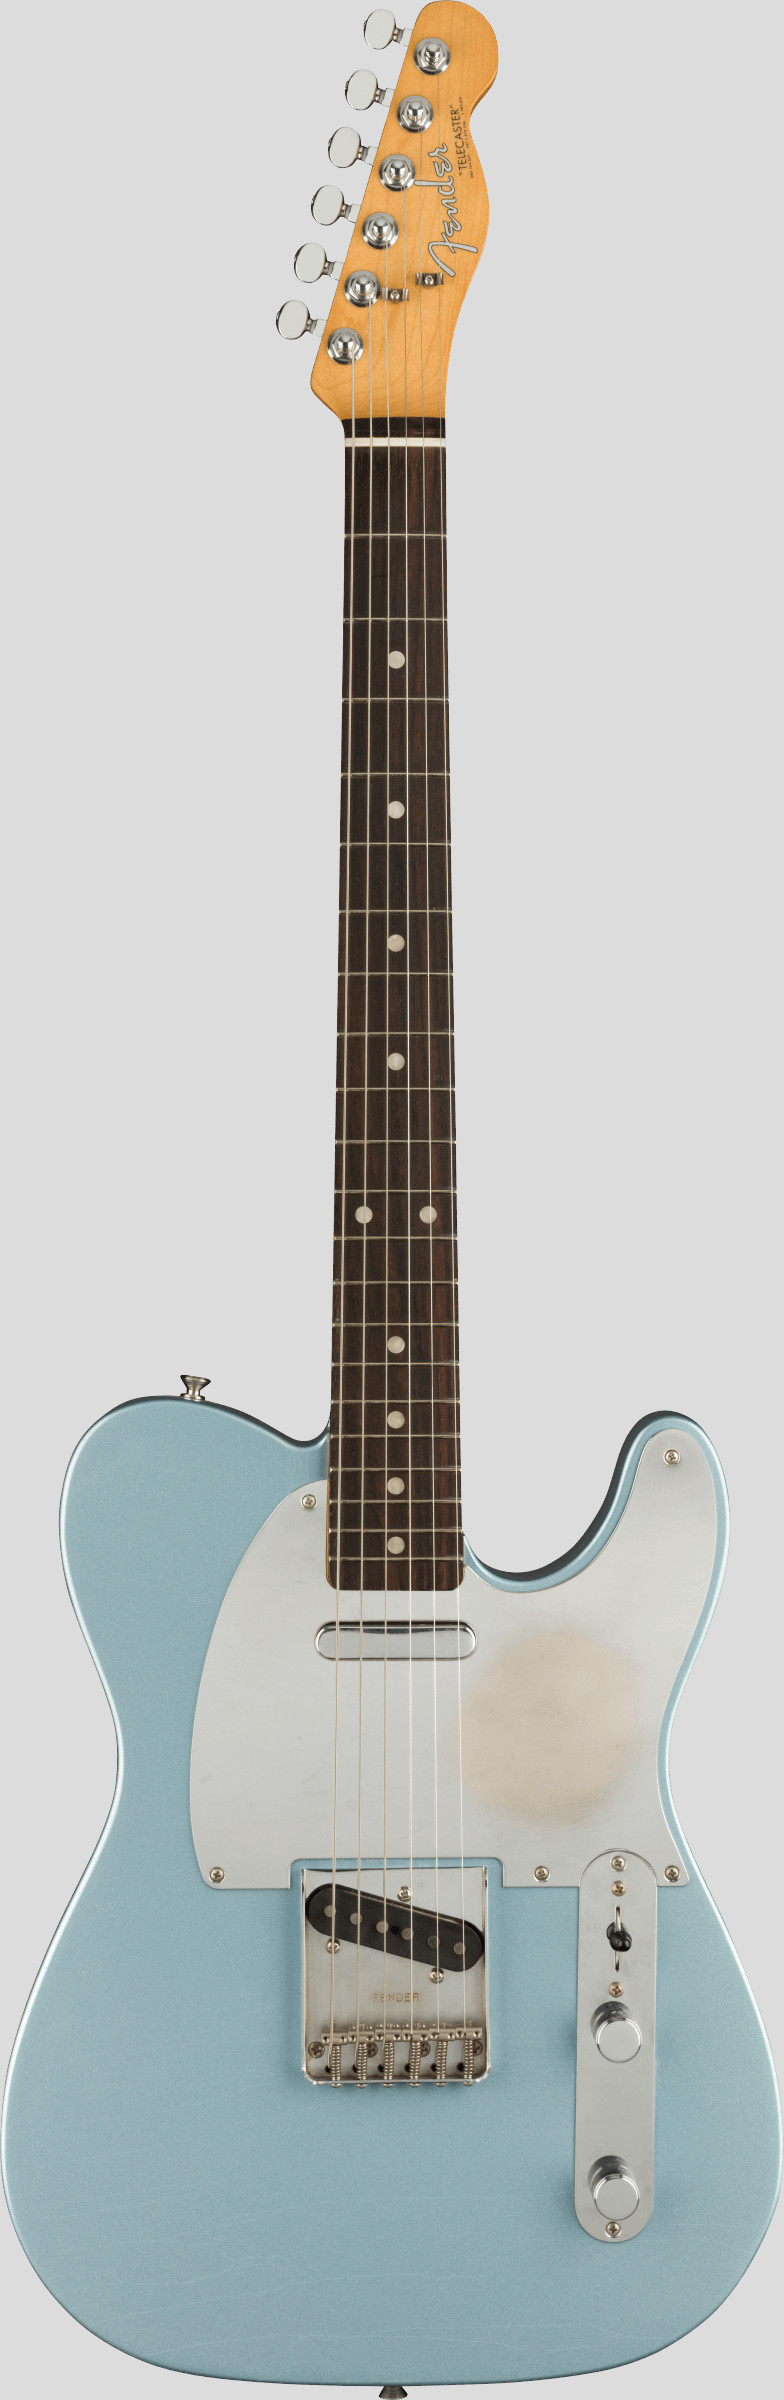 Fender Chrissie Hynde Road Worn Telecaster Ice Blue Metallic 1